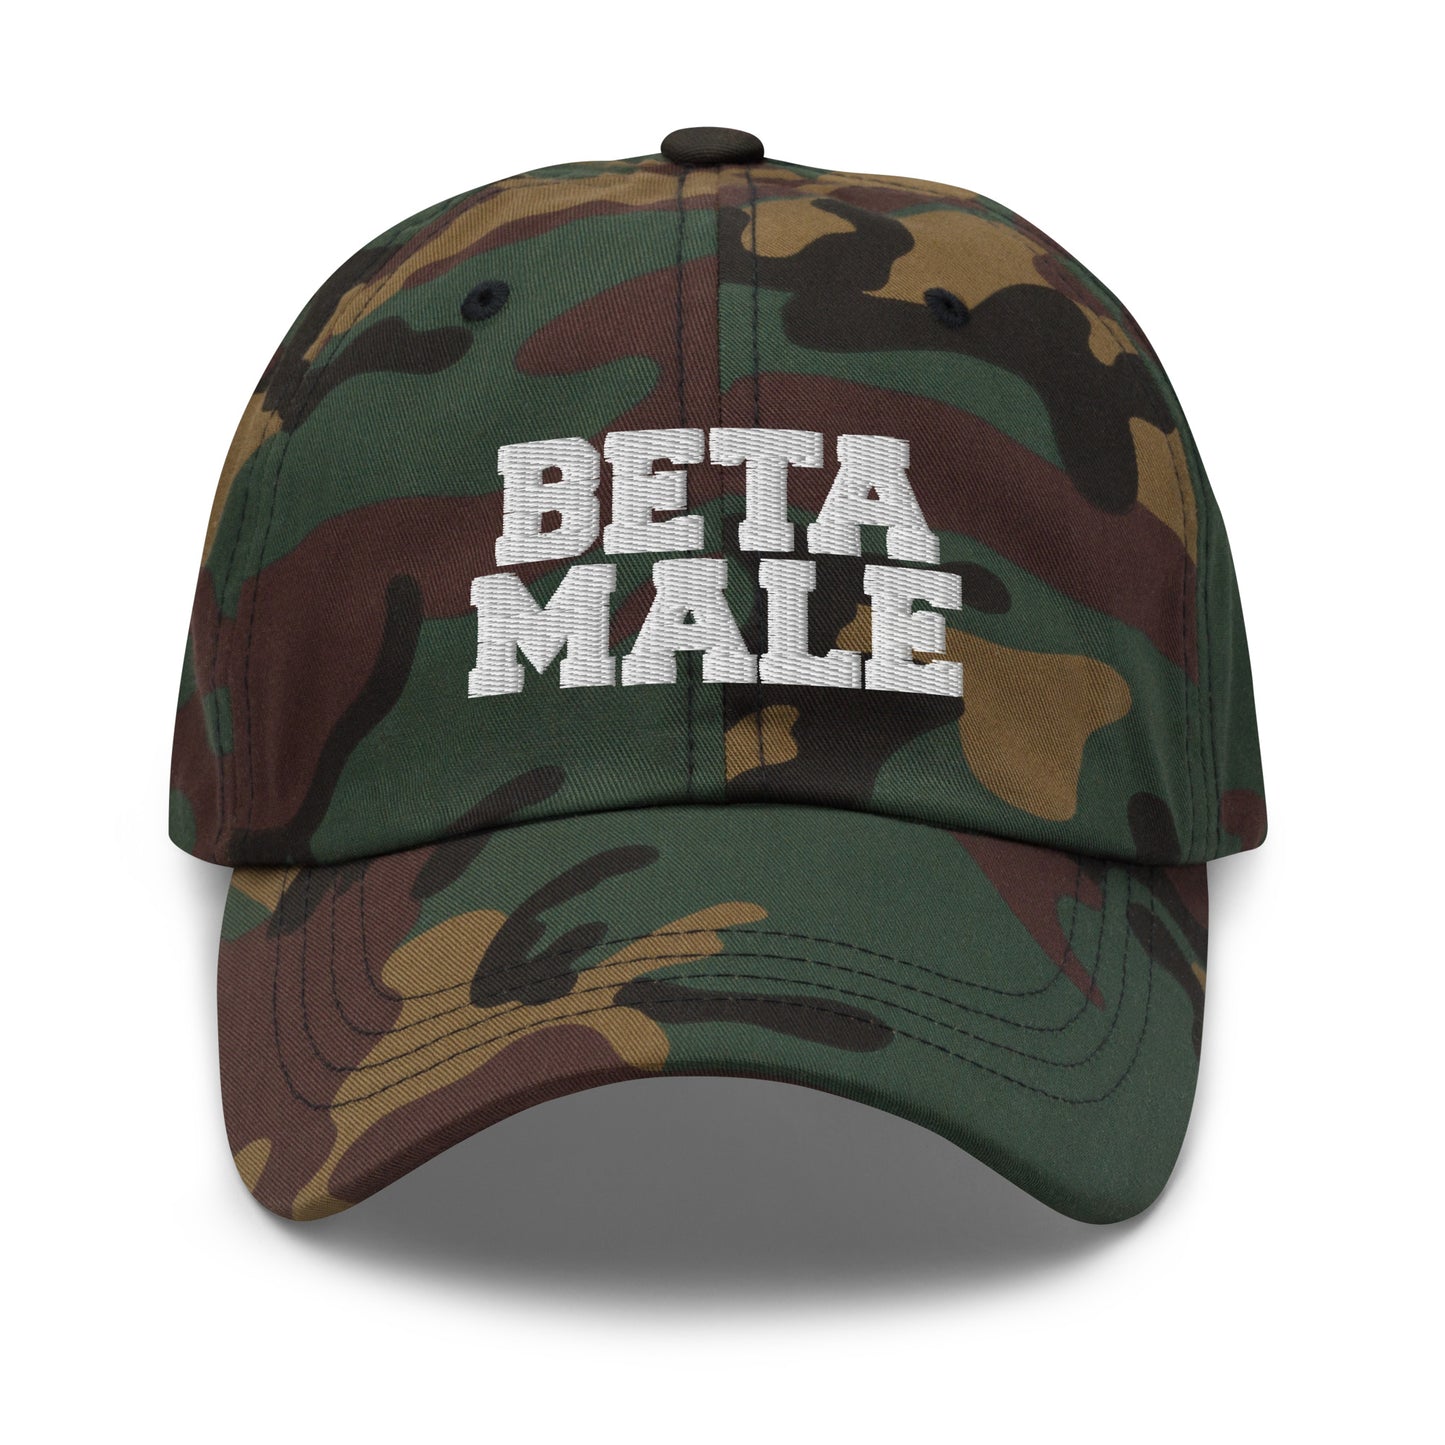 Beta Male hat